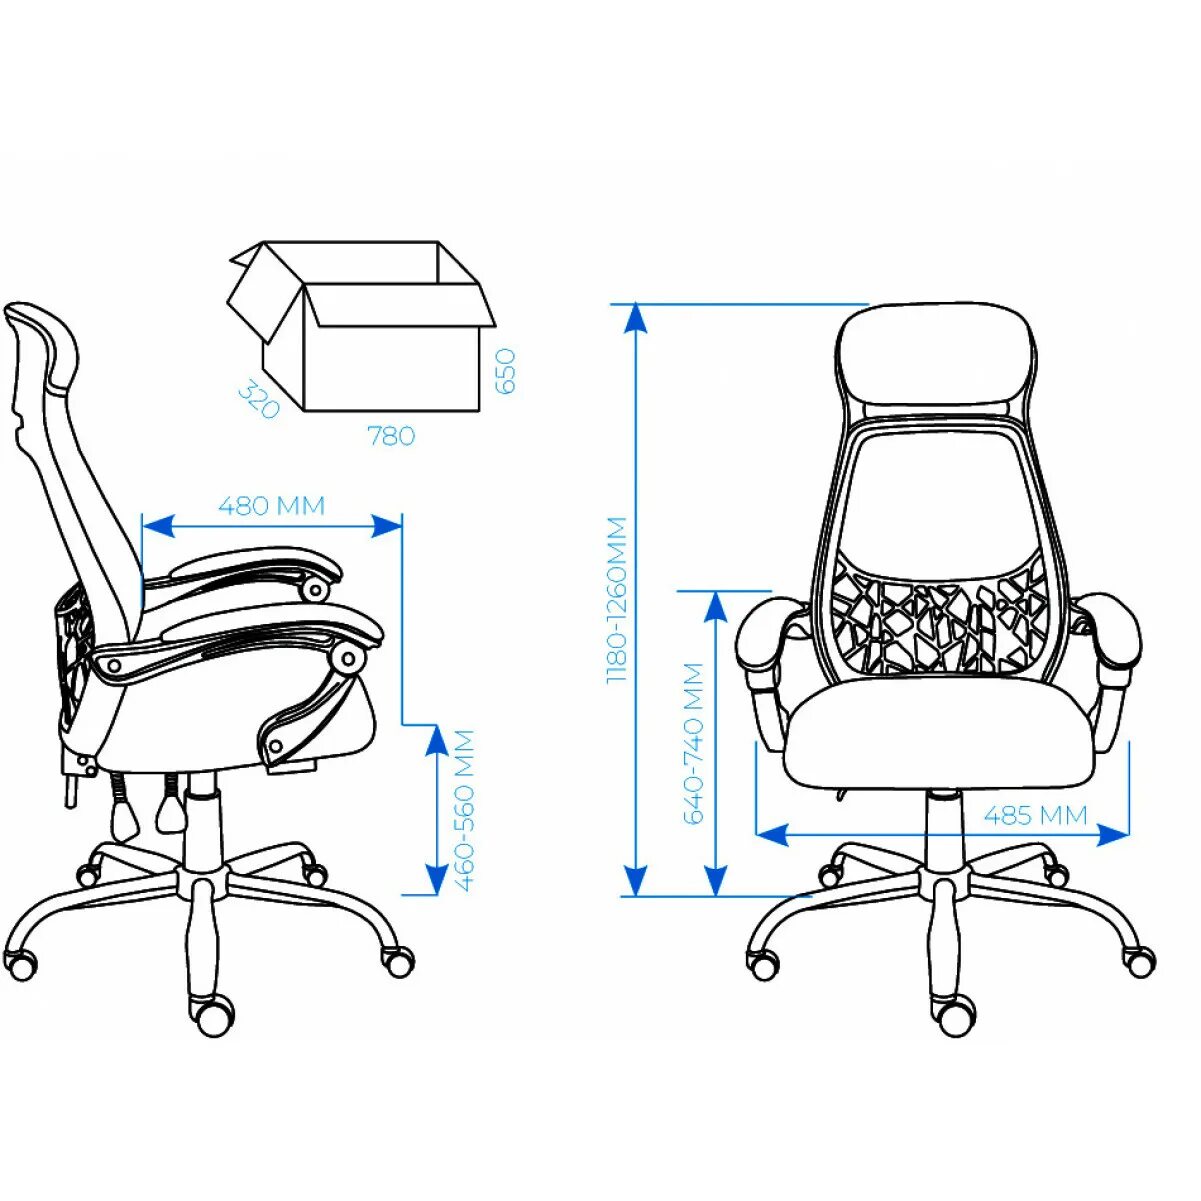 Кресла офисные высота спинки. Кресло АЛСАВ al 764. Конструкция кресла. Офисное кресло чертеж. Эргономичное офисное кресло чертеж.